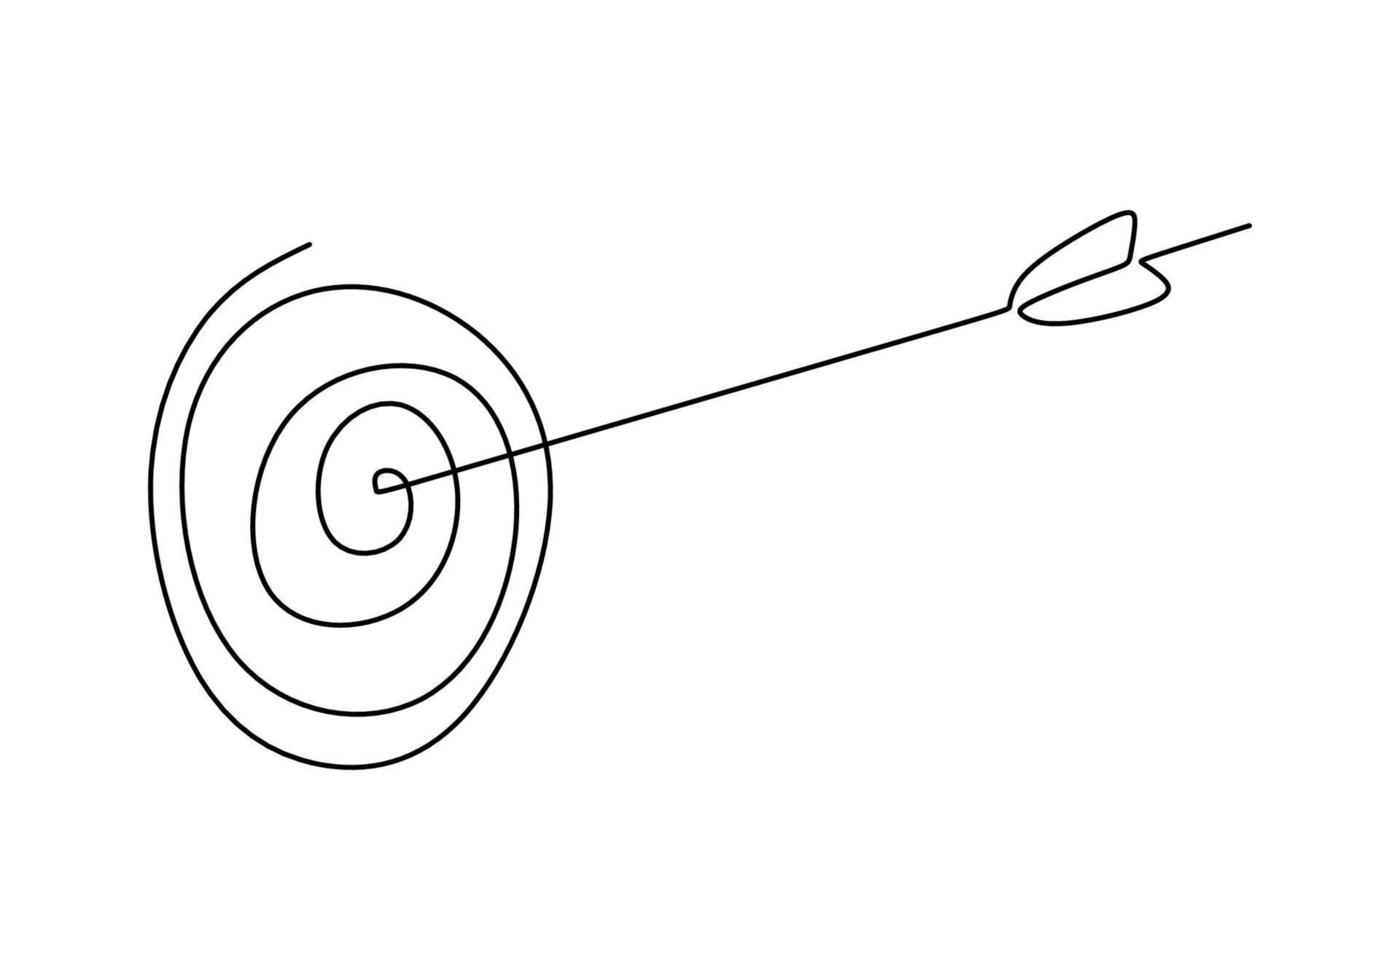 uno continuo singolo linea mano disegno di frecce scopo vettore